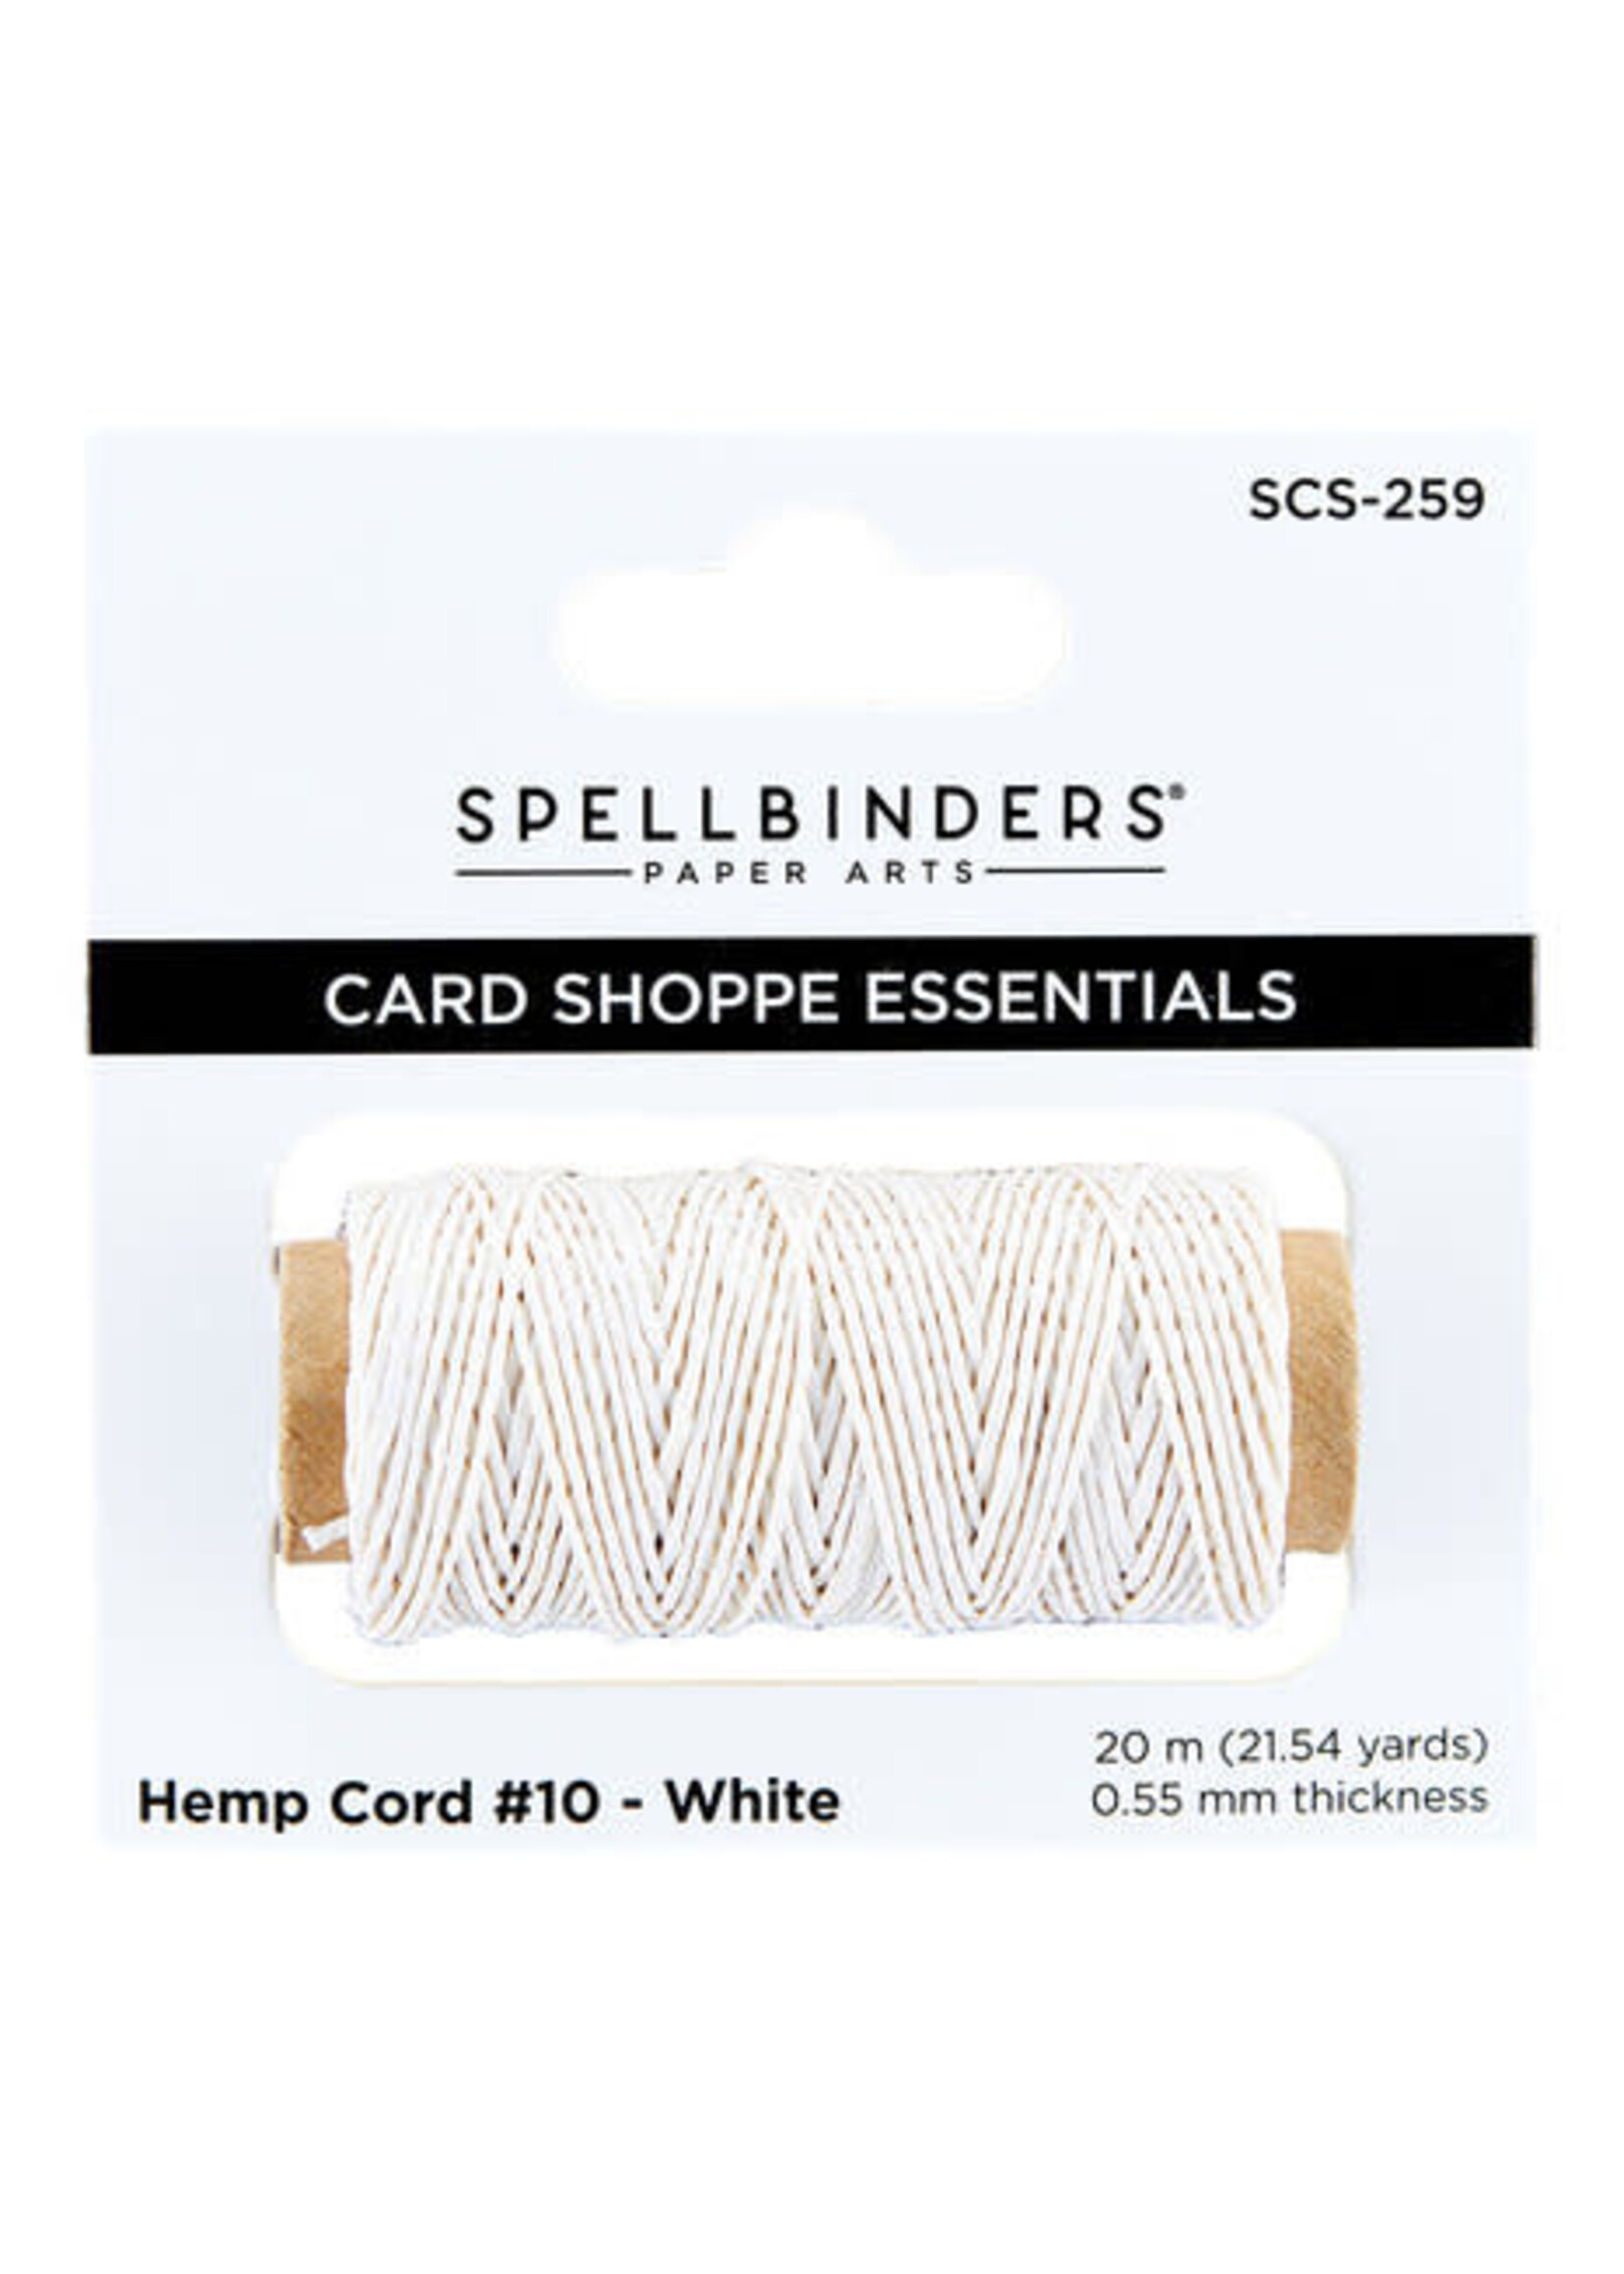 spellbinders White Hemp Cord (SCS-259)